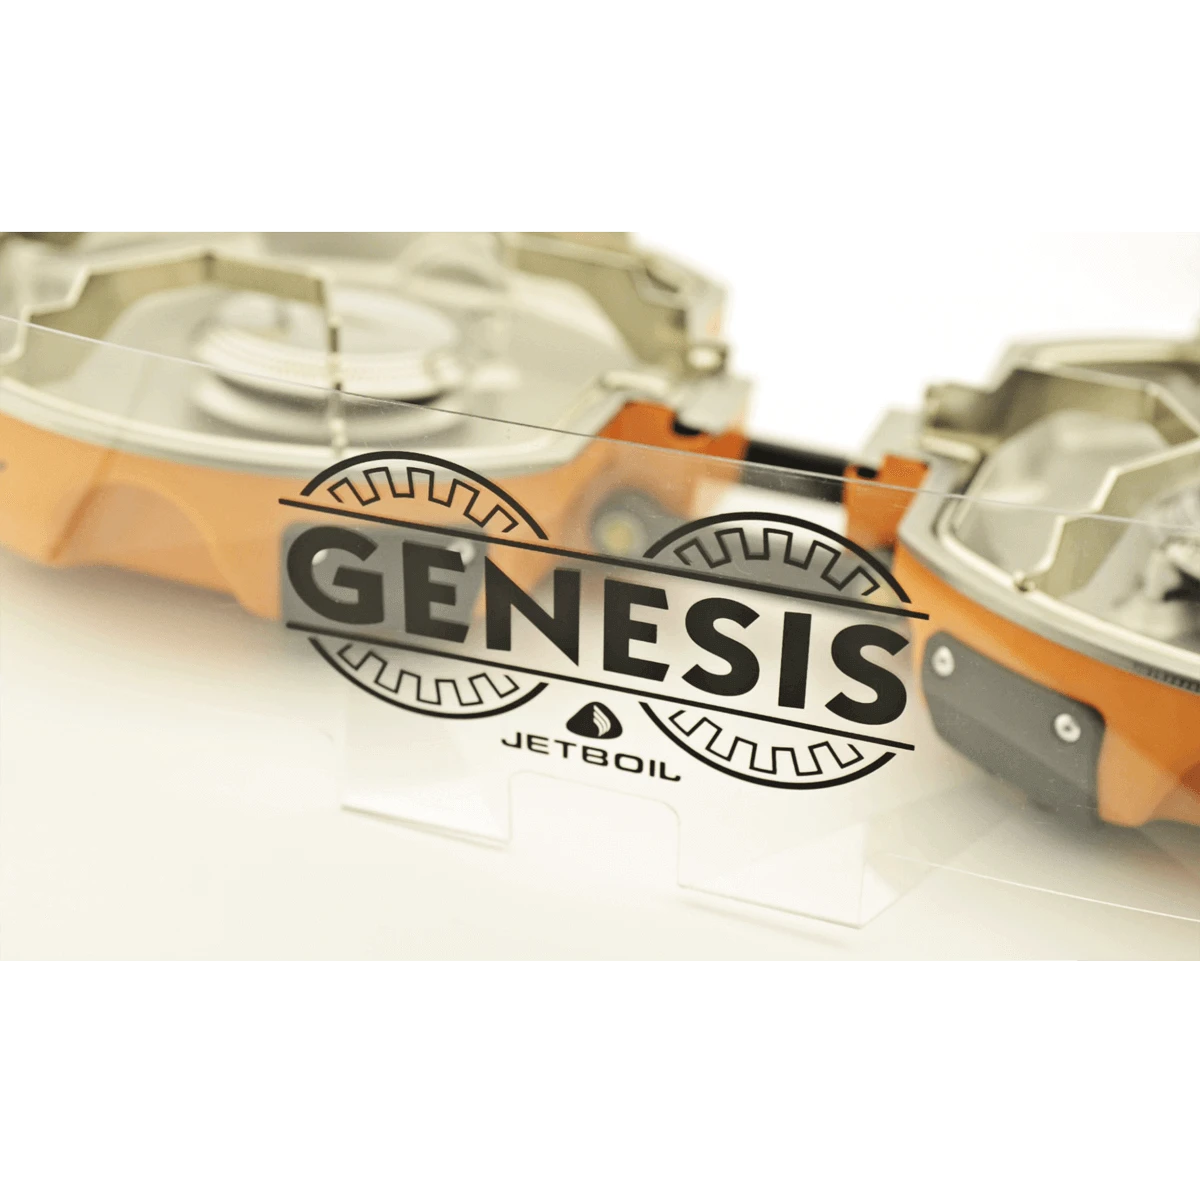 Genesis Windscreen in use